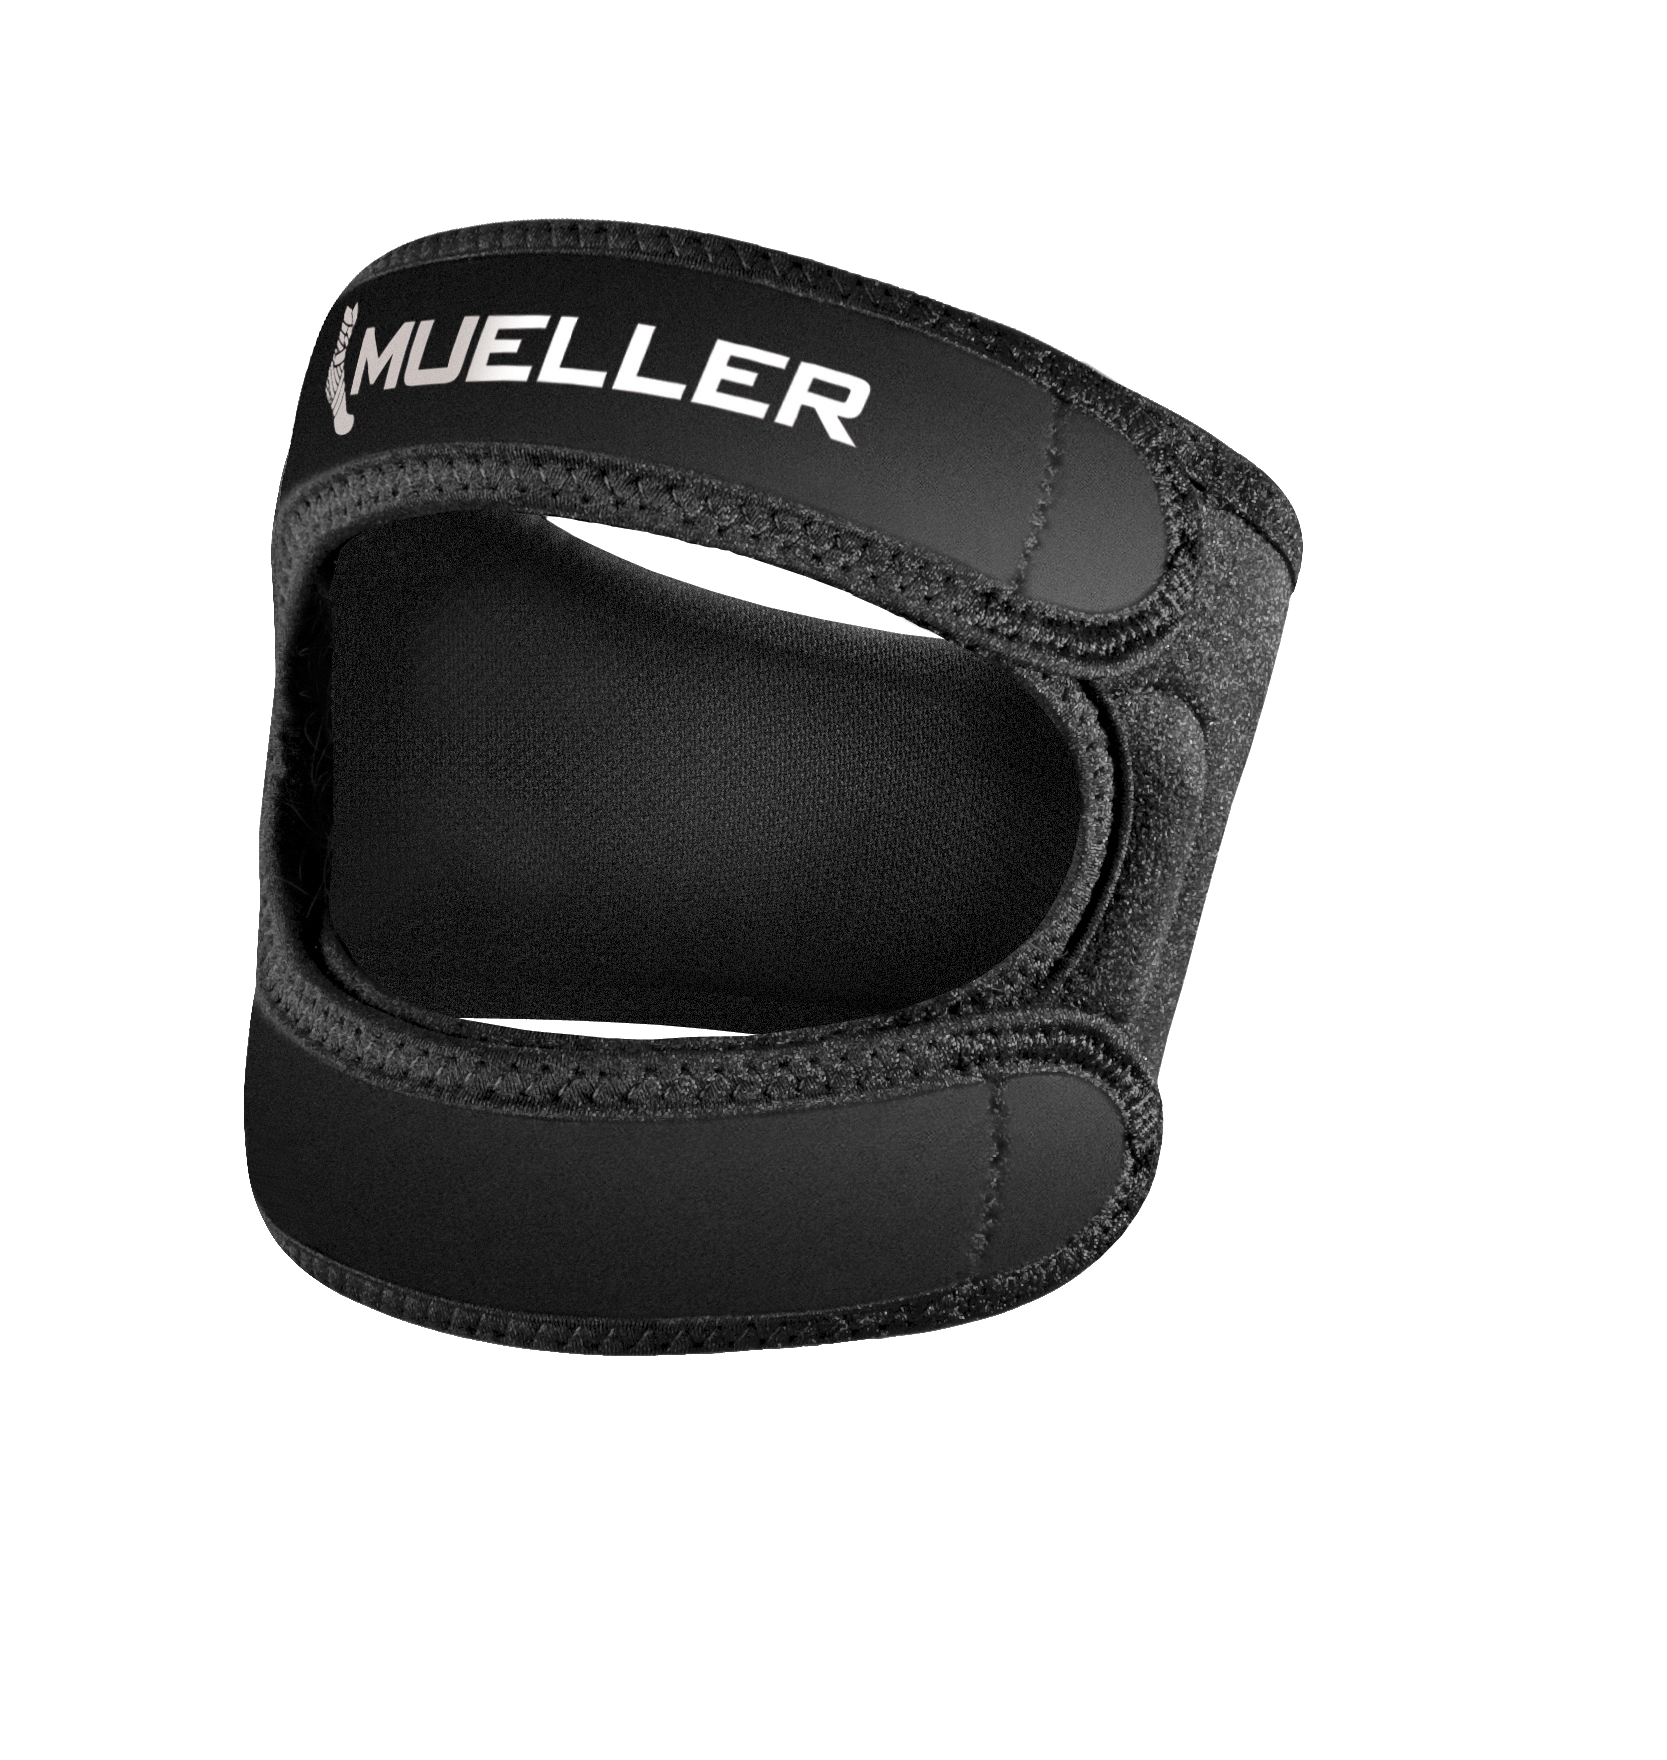 Mueller Adjustable Max Knee Strap 59857 Produkt frontal